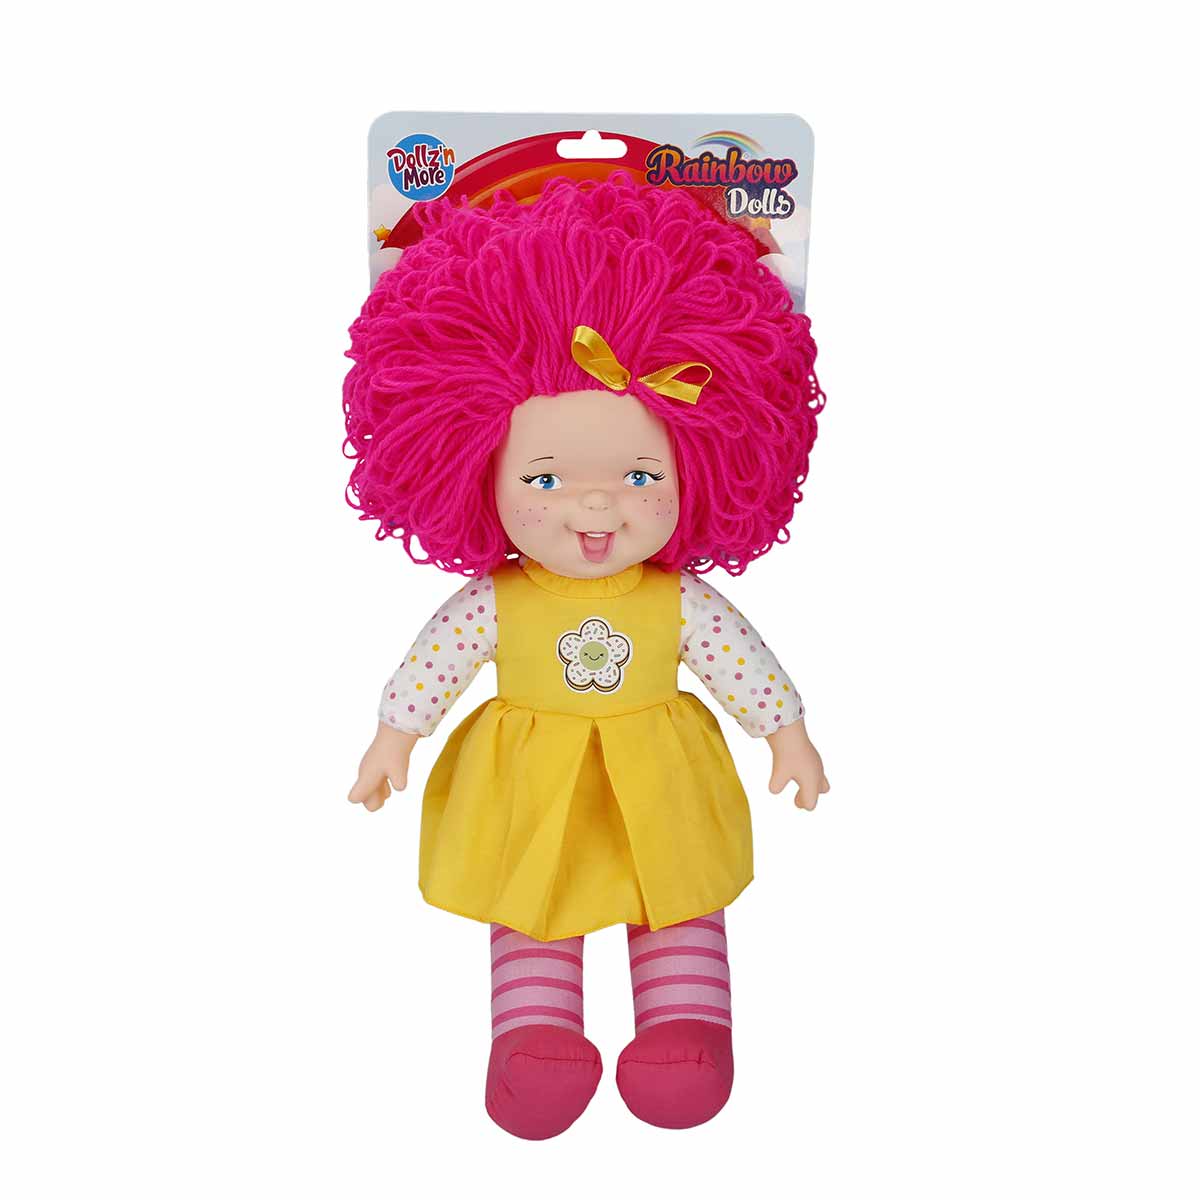 Papusa Rainbow Dolls, Dollzn More, cu par roz, 45 cm Dolls